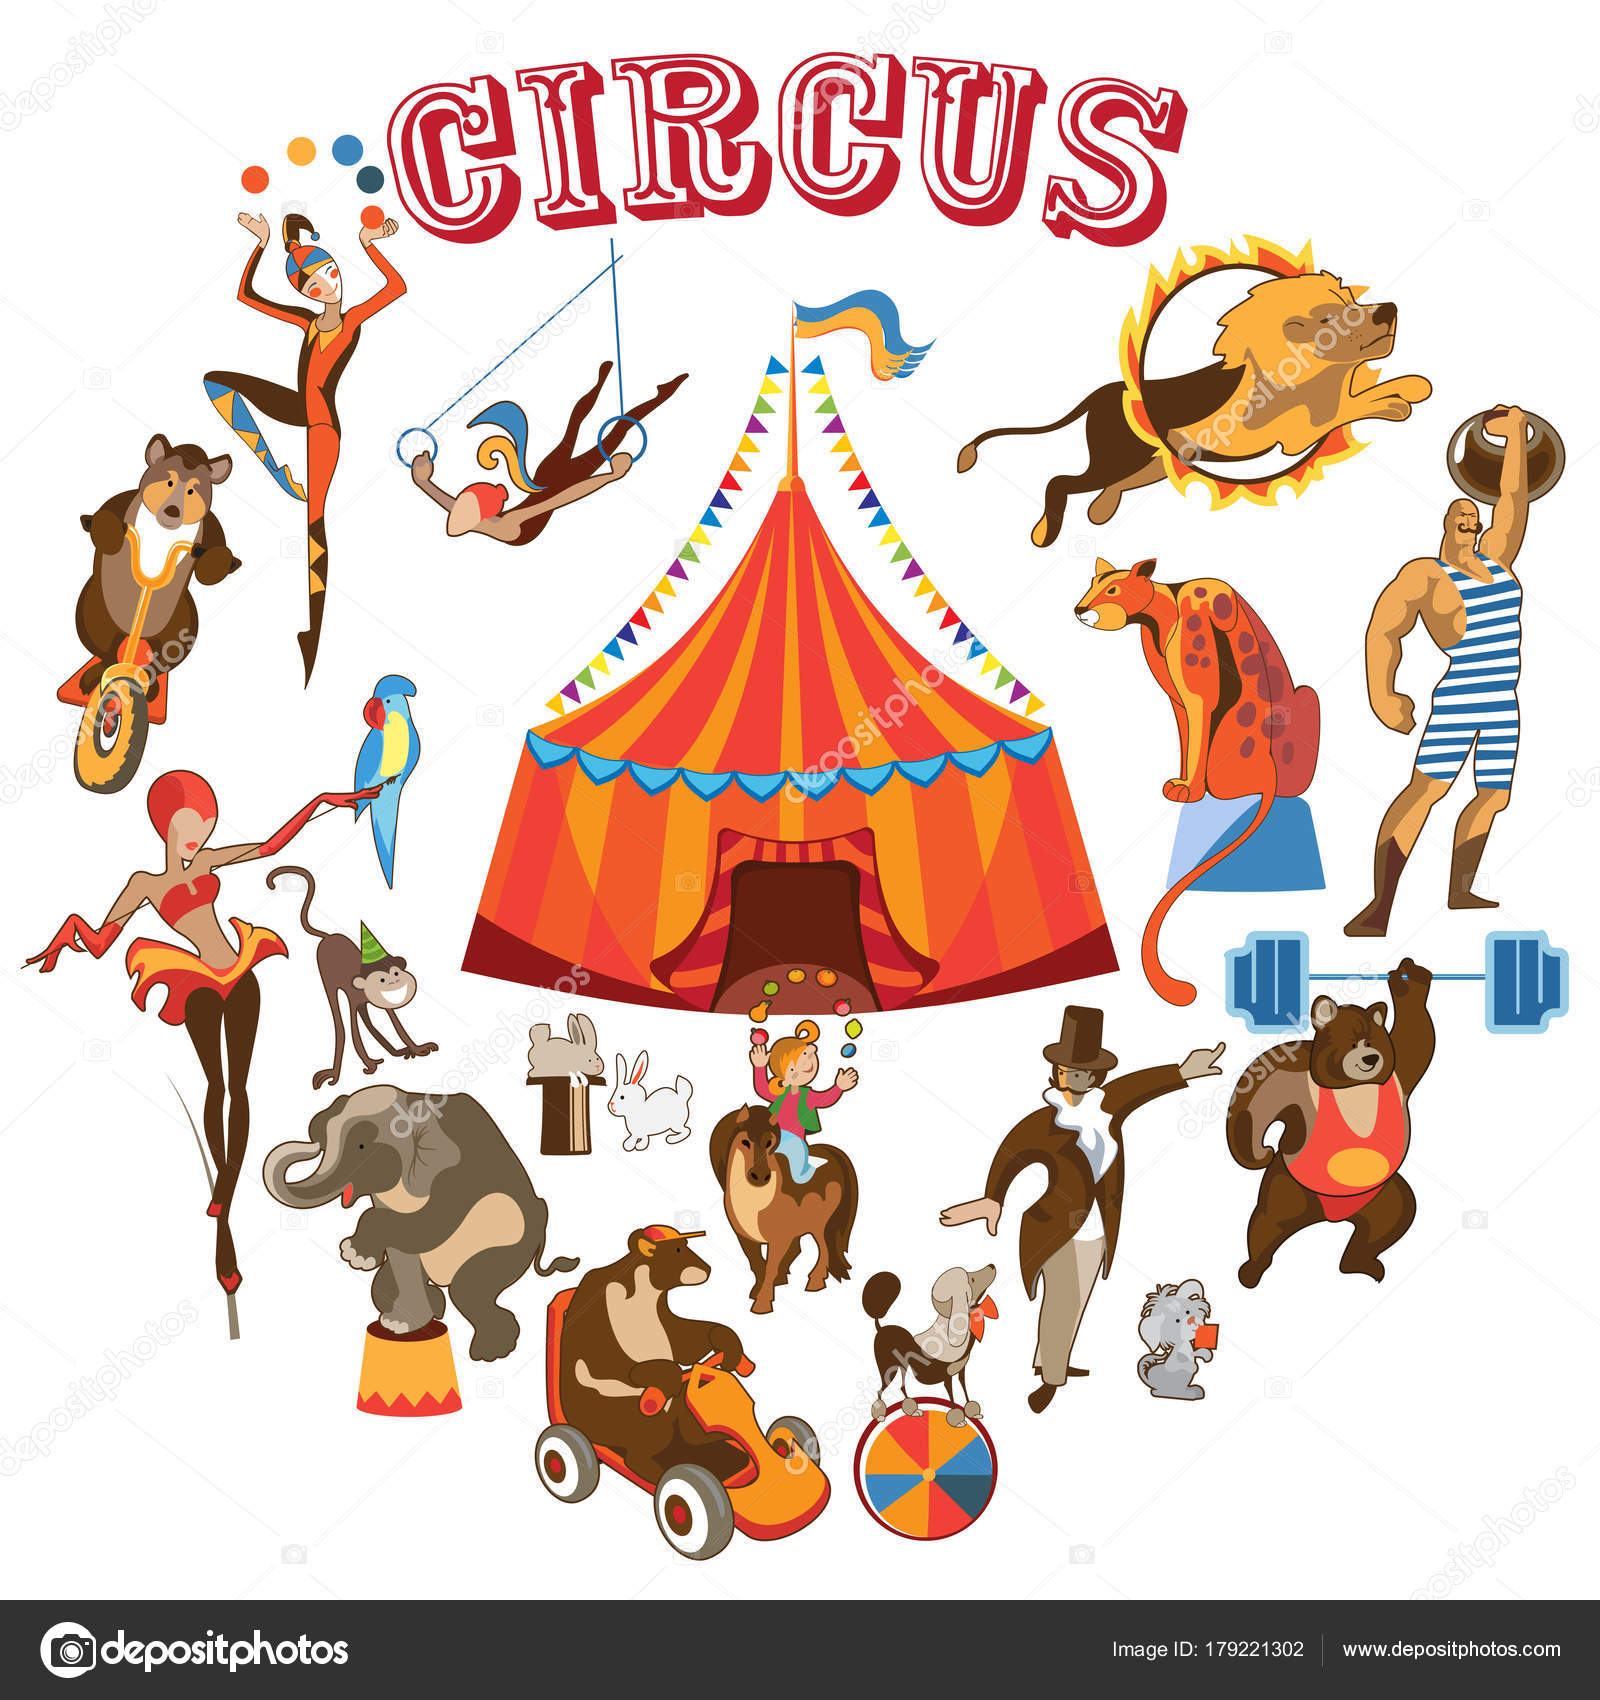 Cartoon circus images Vector Art Stock Images | Depositphotos